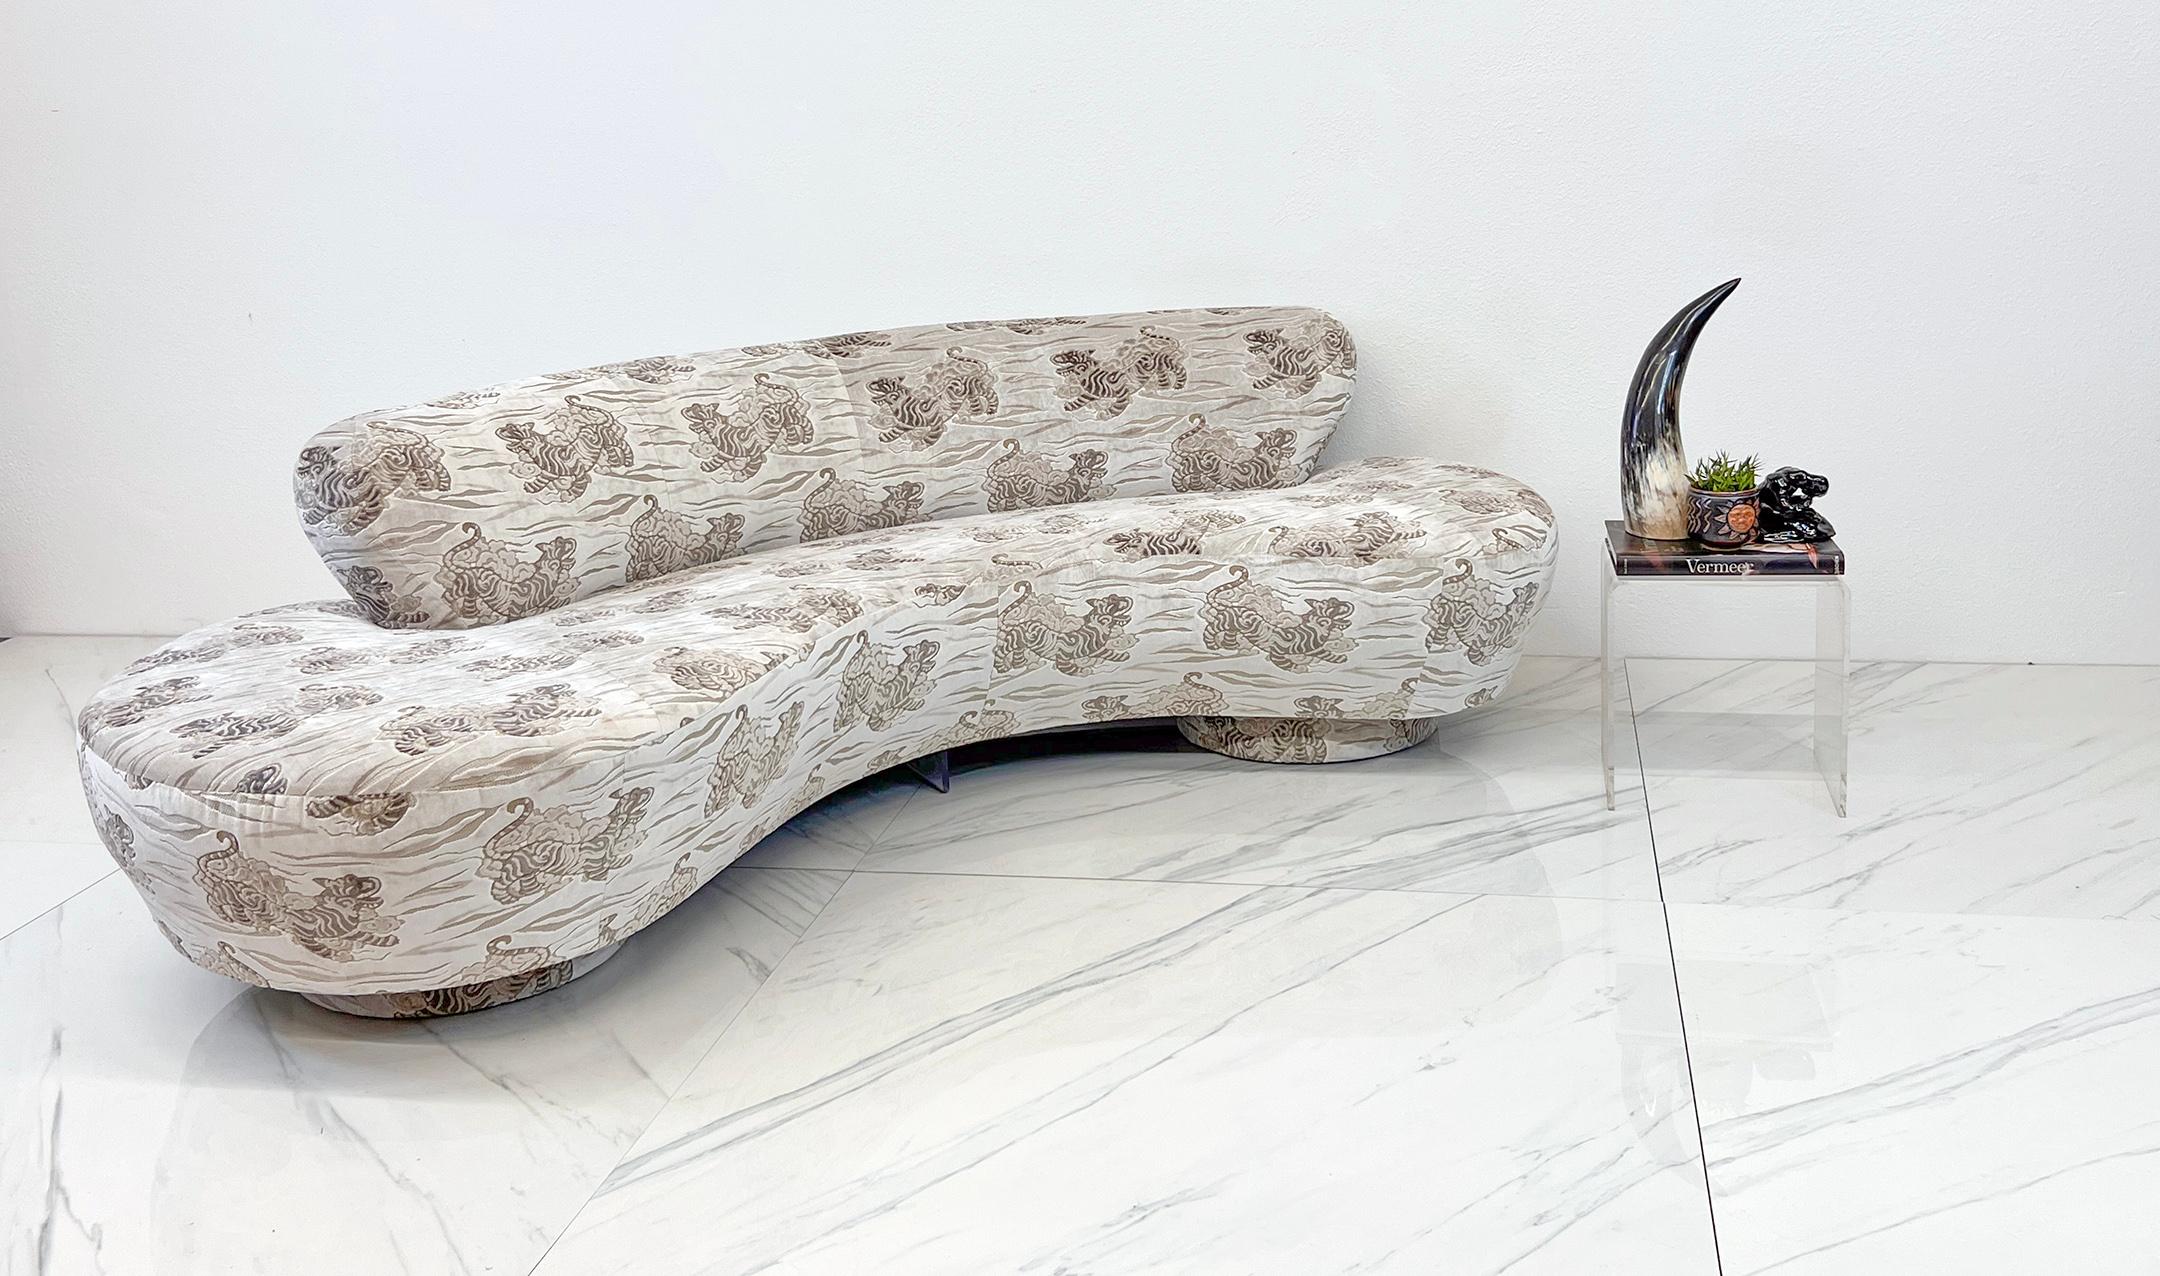 
Dieses Vladimir Kagan Cloud Sofa ist göttlich! Dies ist nicht irgendein Sofa, sondern eine fantastische Reise in die Welt des Designs, wo Komfort und Schick auf die schönste Art und Weise zusammenkommen.

Stellen Sie sich vor, wie Sie auf einer